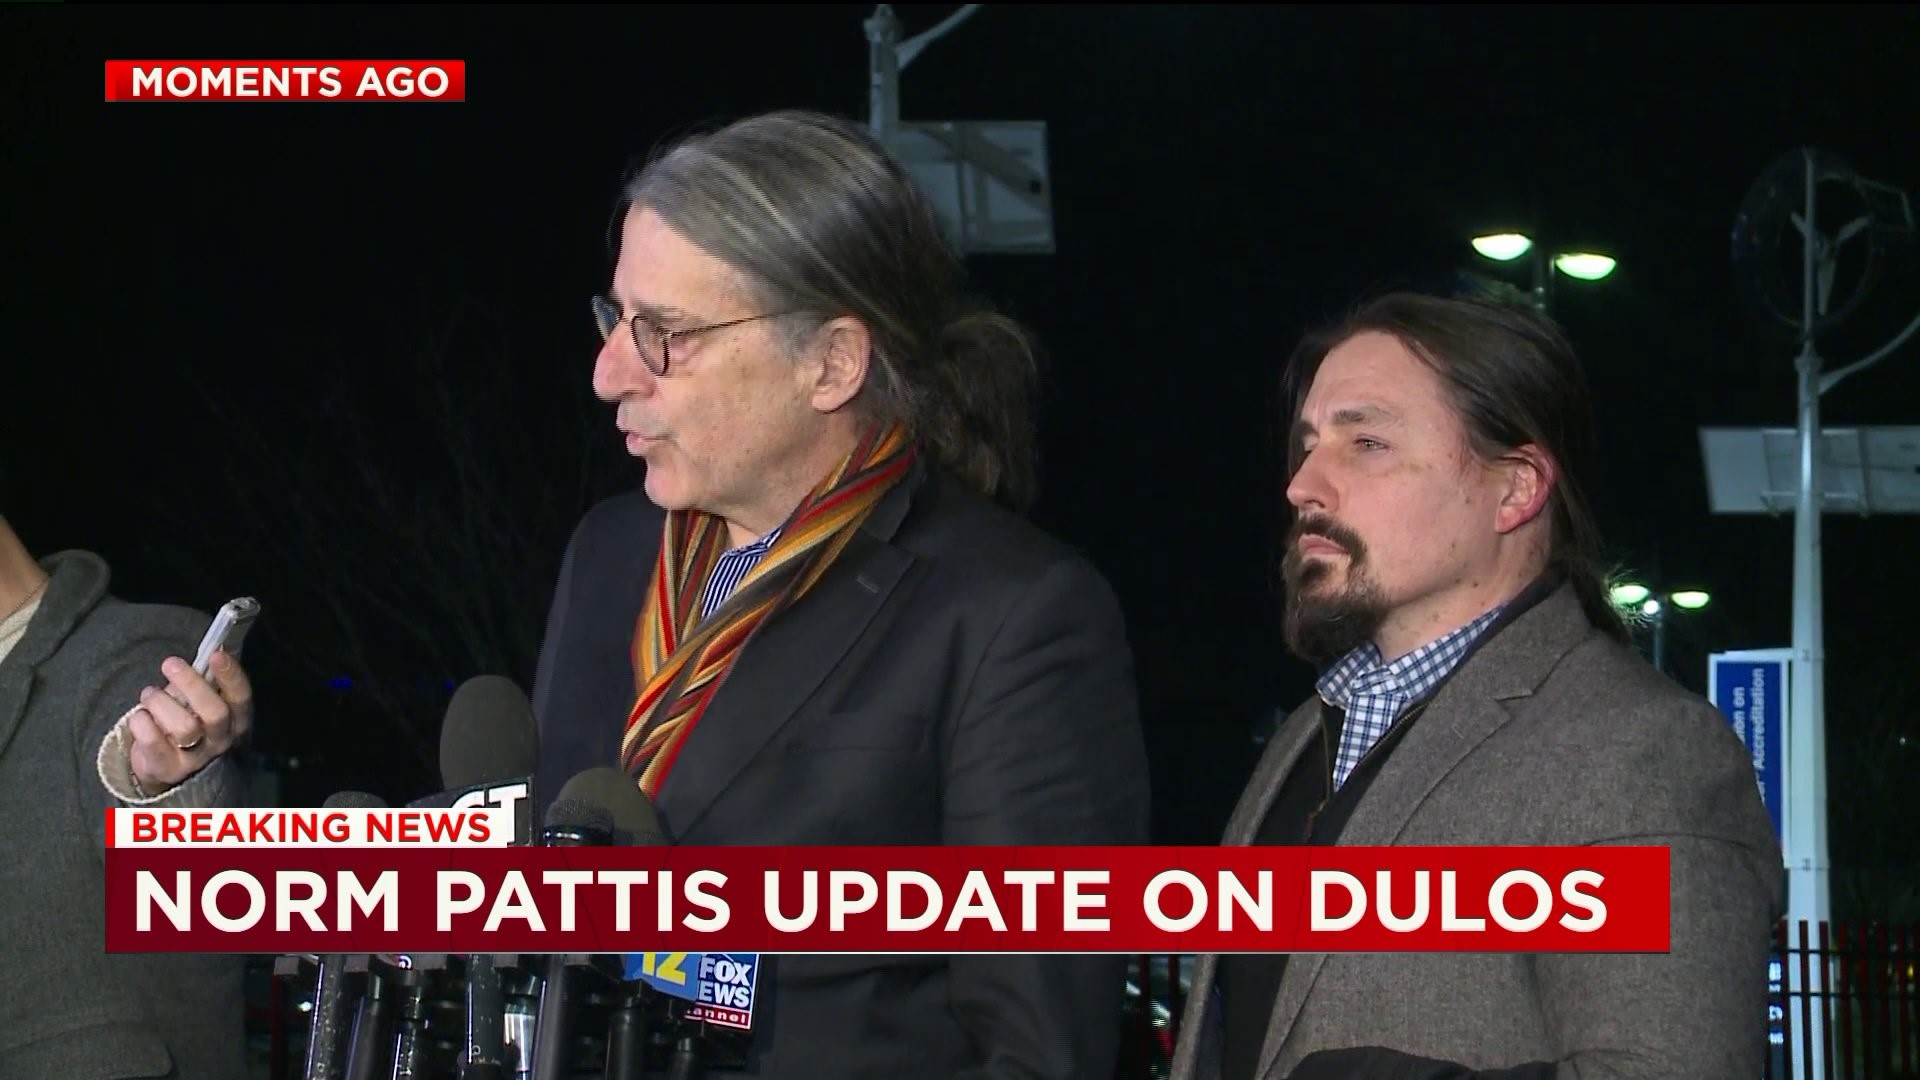 Fotis Dulos was declared dead